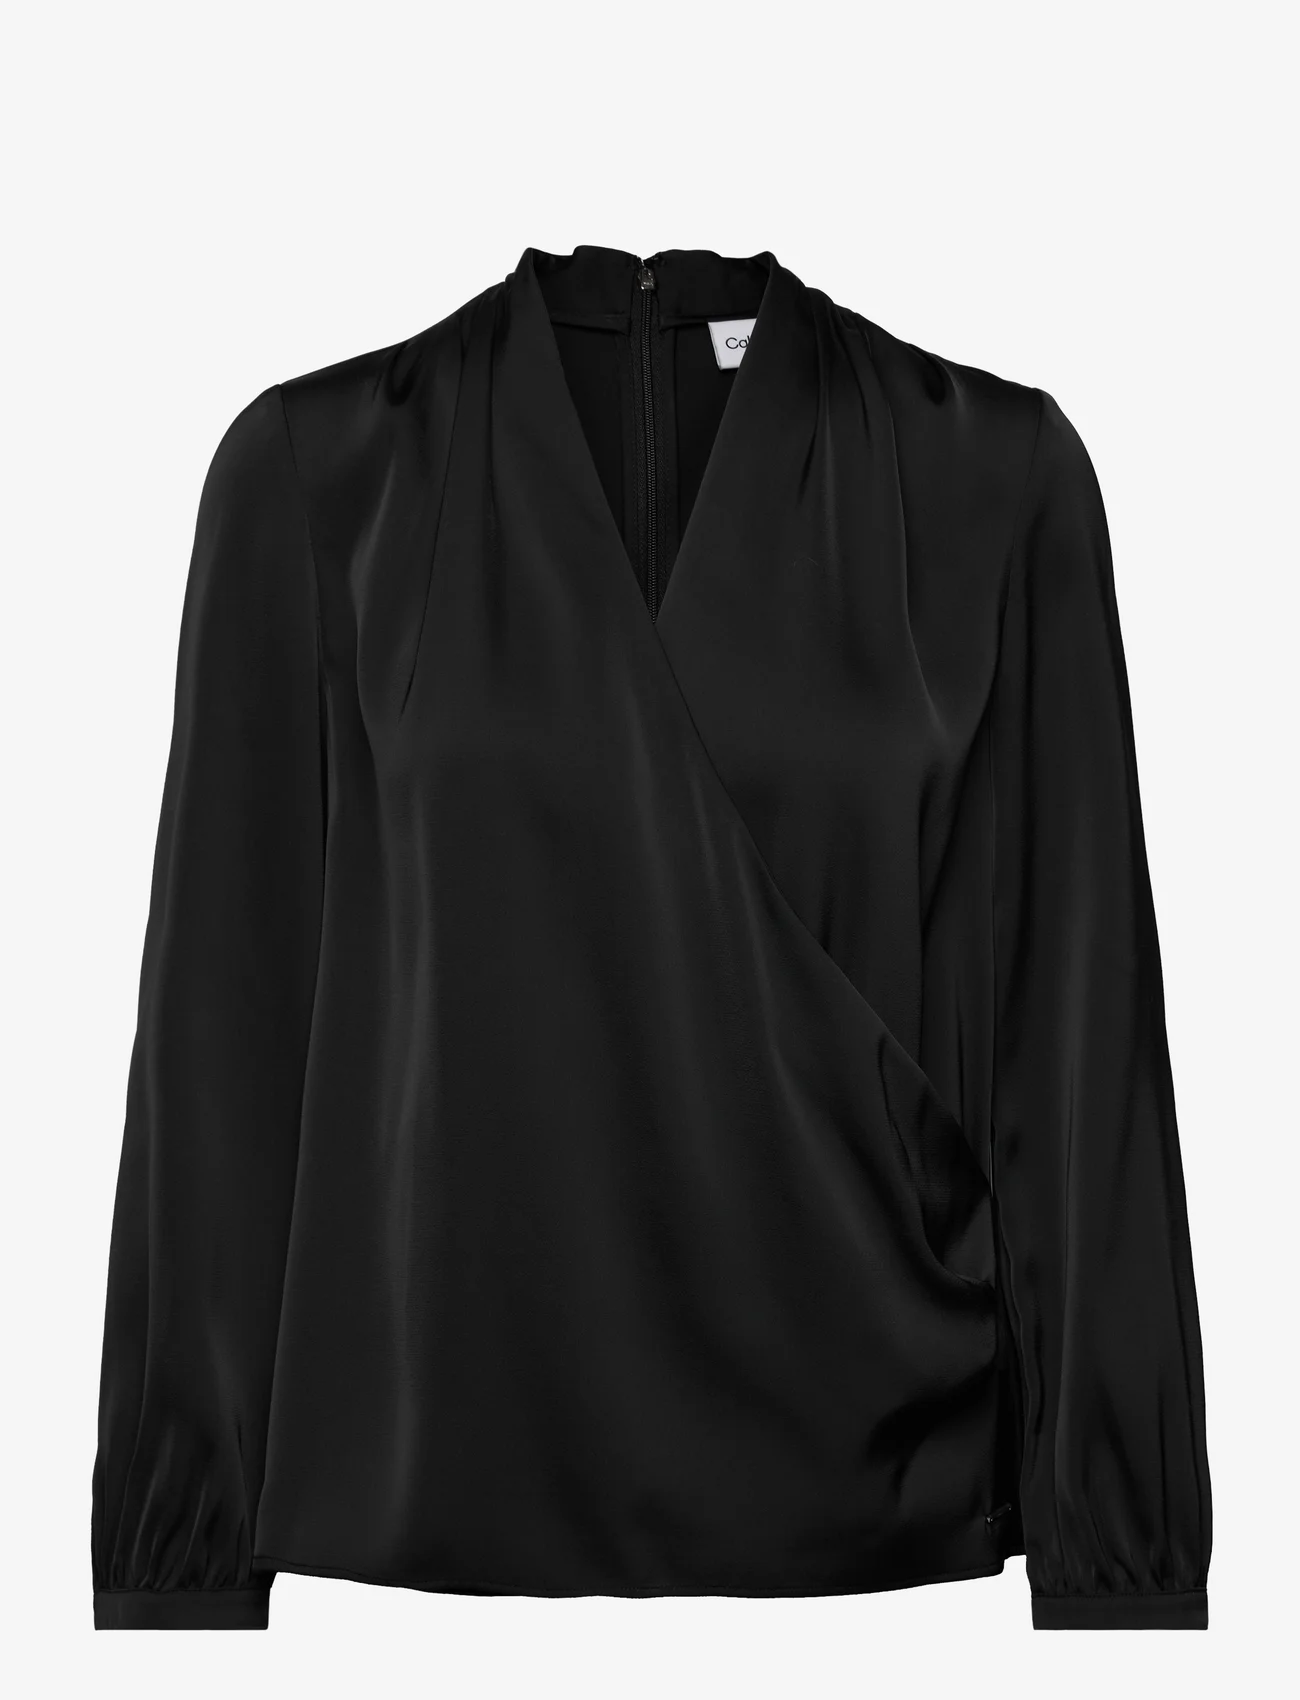 Calvin Klein - SATIN SHINE LS V NECK BLOUSE - langærmede bluser - ck black - 0